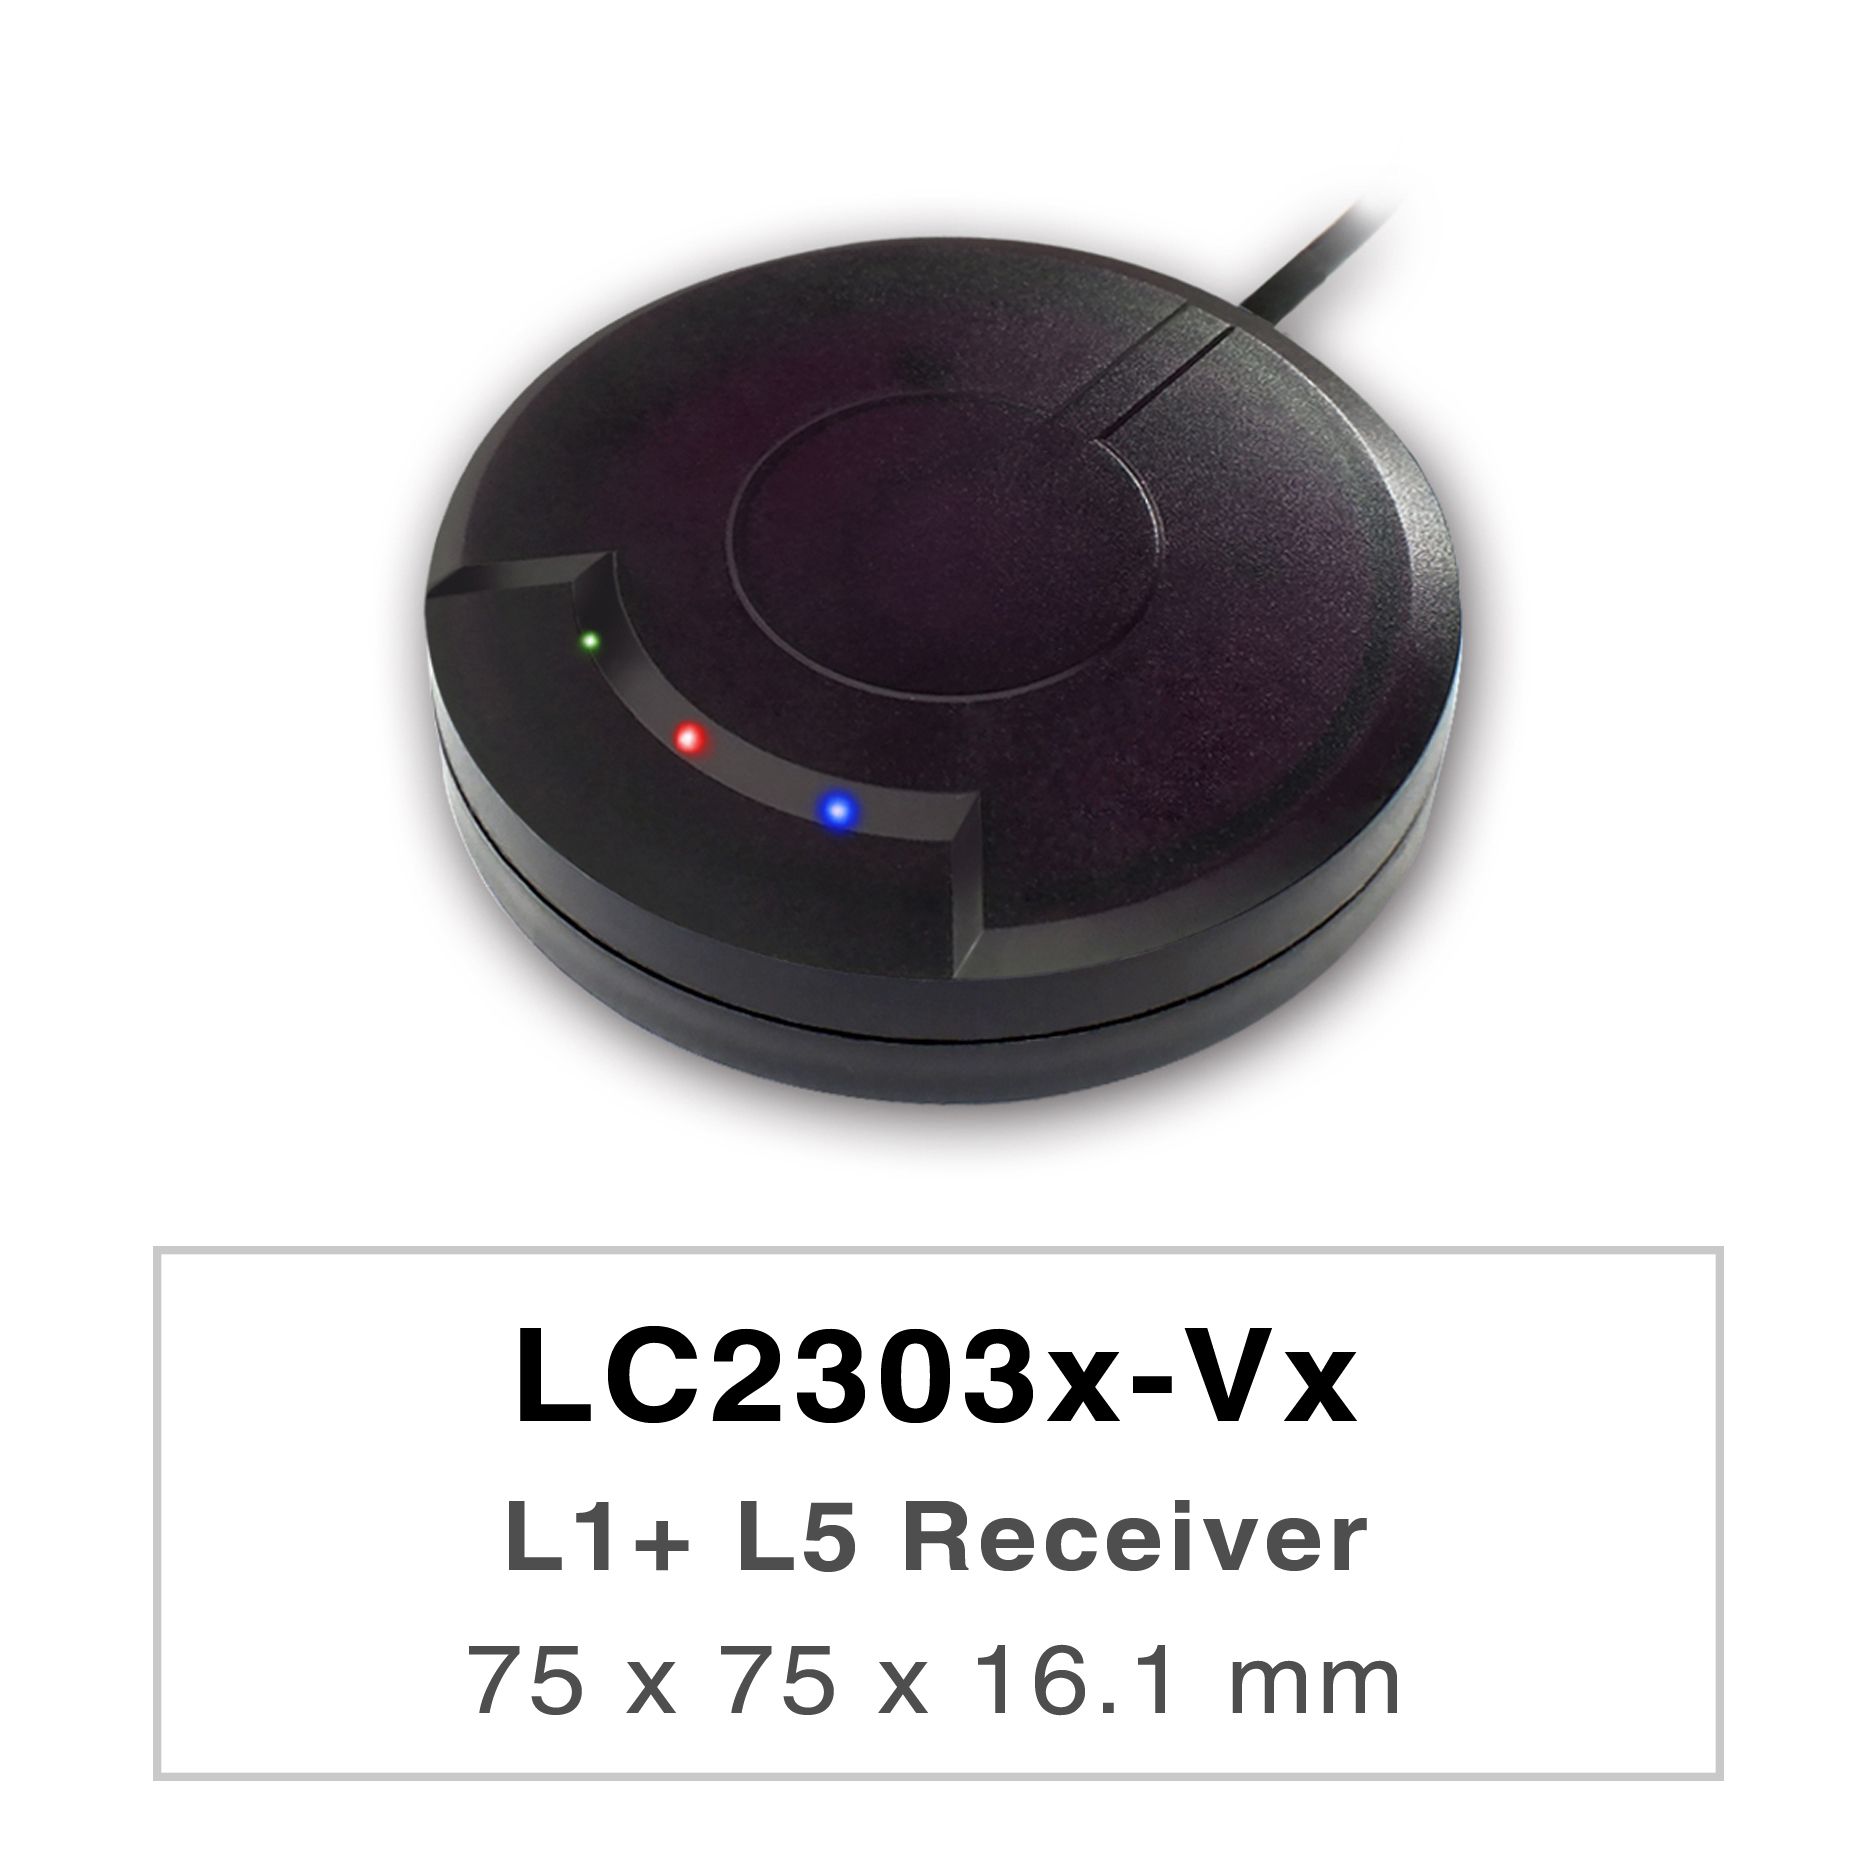 Продукты серии LC2303x-Vx представляют собой высокопроизводительные двухдиапазонные приемники GNSS (также известные как GNSS-мышь), способные отслеживать все глобальные системы гражданской навигации (GPS, ГЛОНАСС, BDS, GALILEO, QZSS и IRNSS).